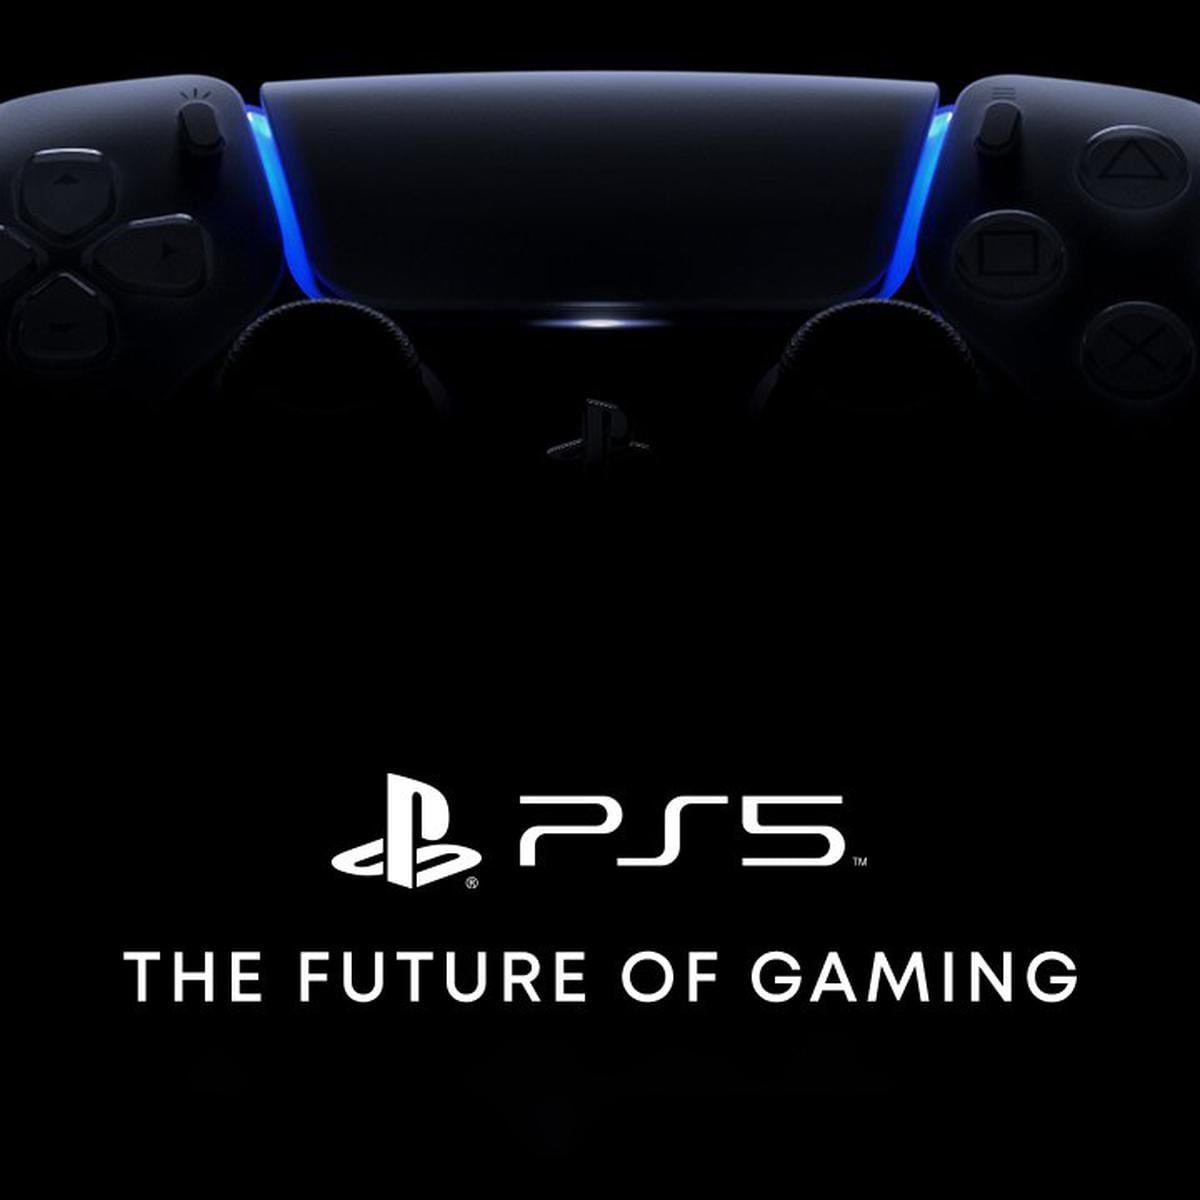 PS5: precio oficial, fecha de lanzamiento y juegos confirmados